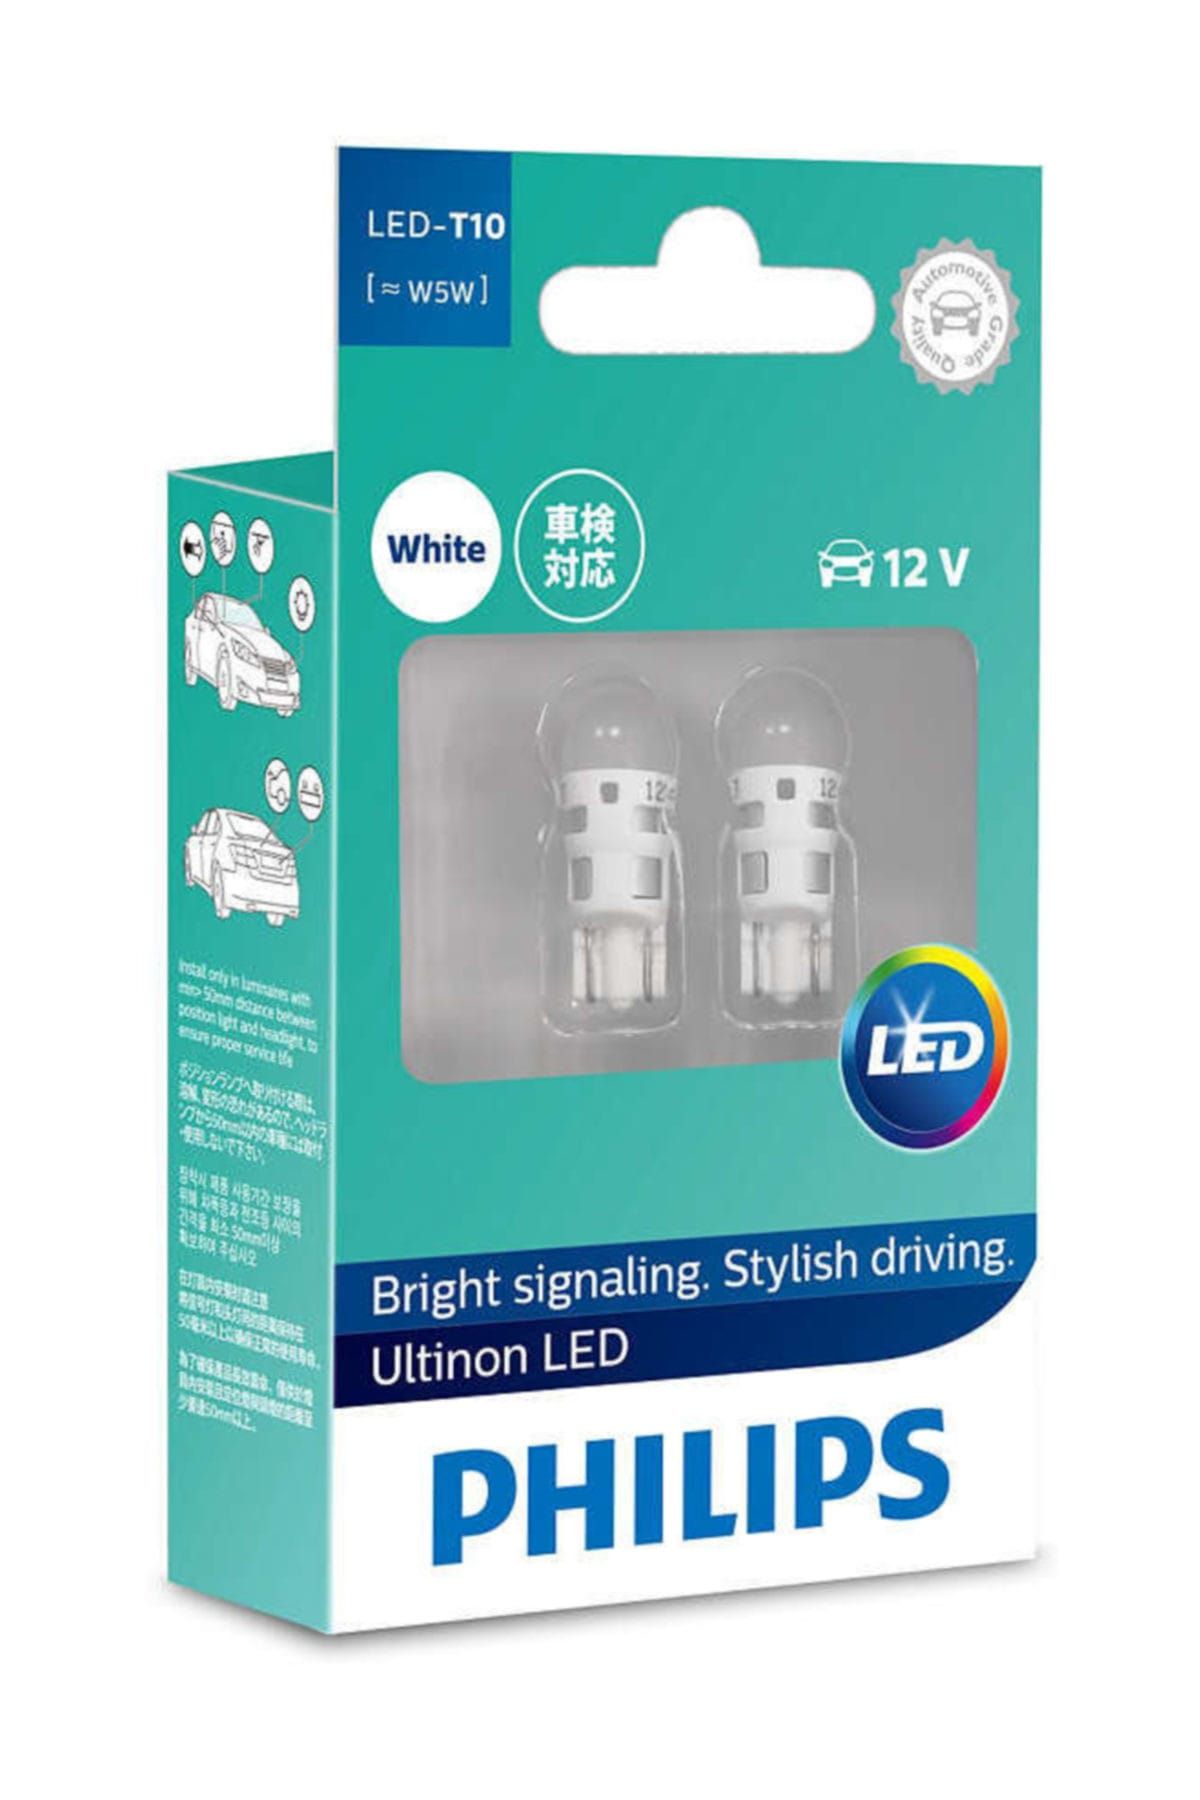 Philips PHILIPS T10 LED AMPULÜ 11961ulwx2 6000K Beyaz 8 Yıl Kullanım